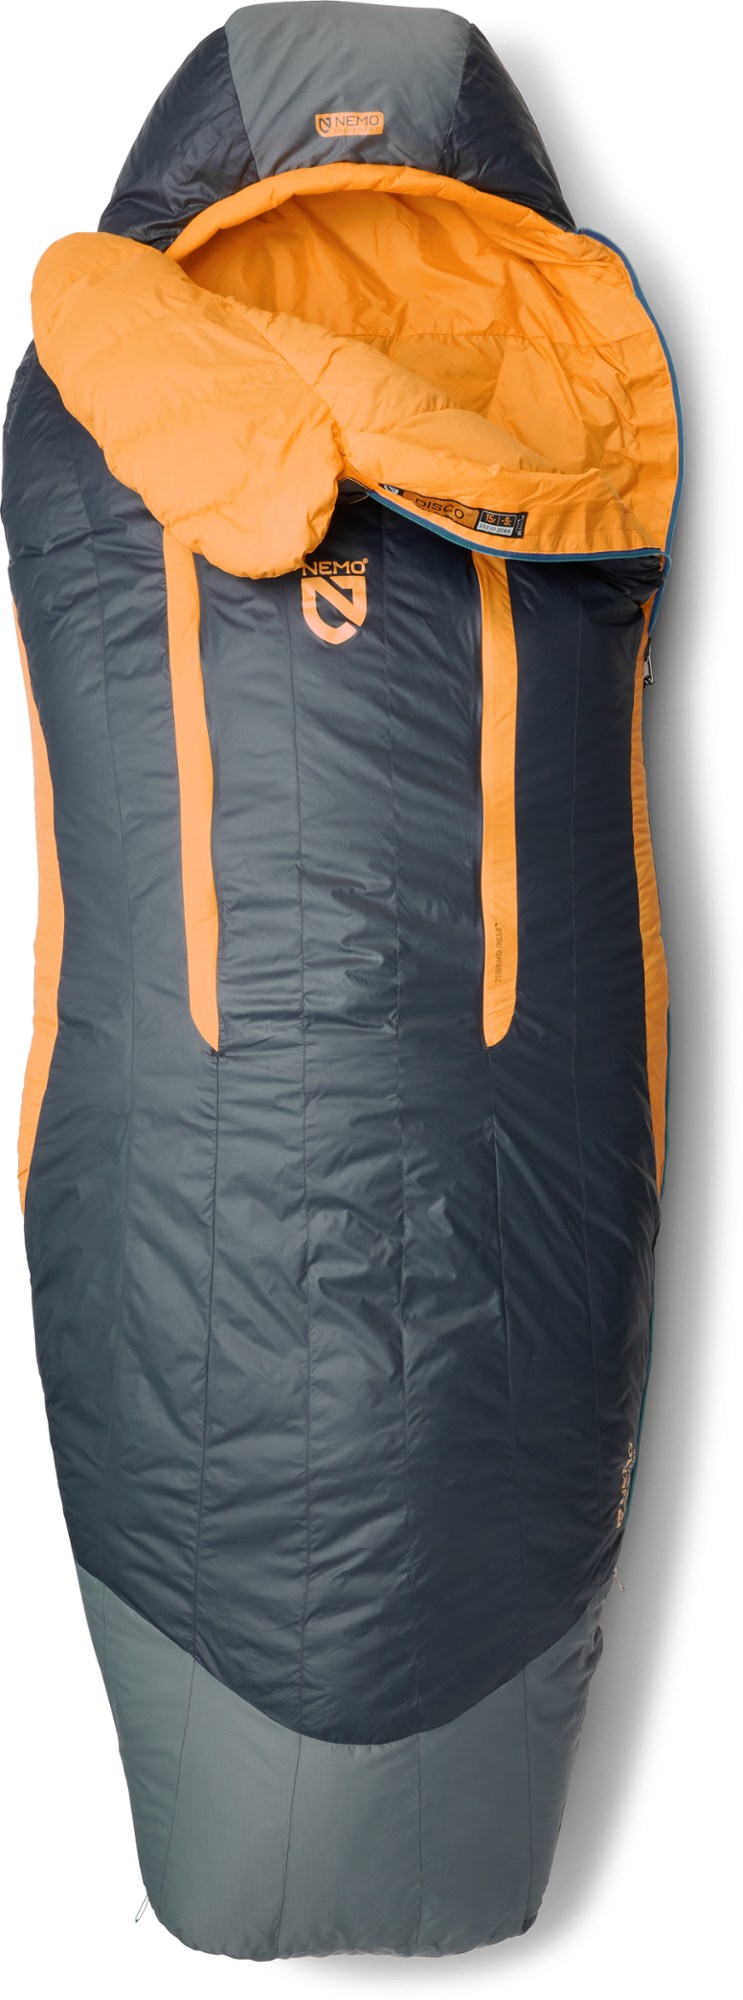 Nemo Disco 15 sleeping bag